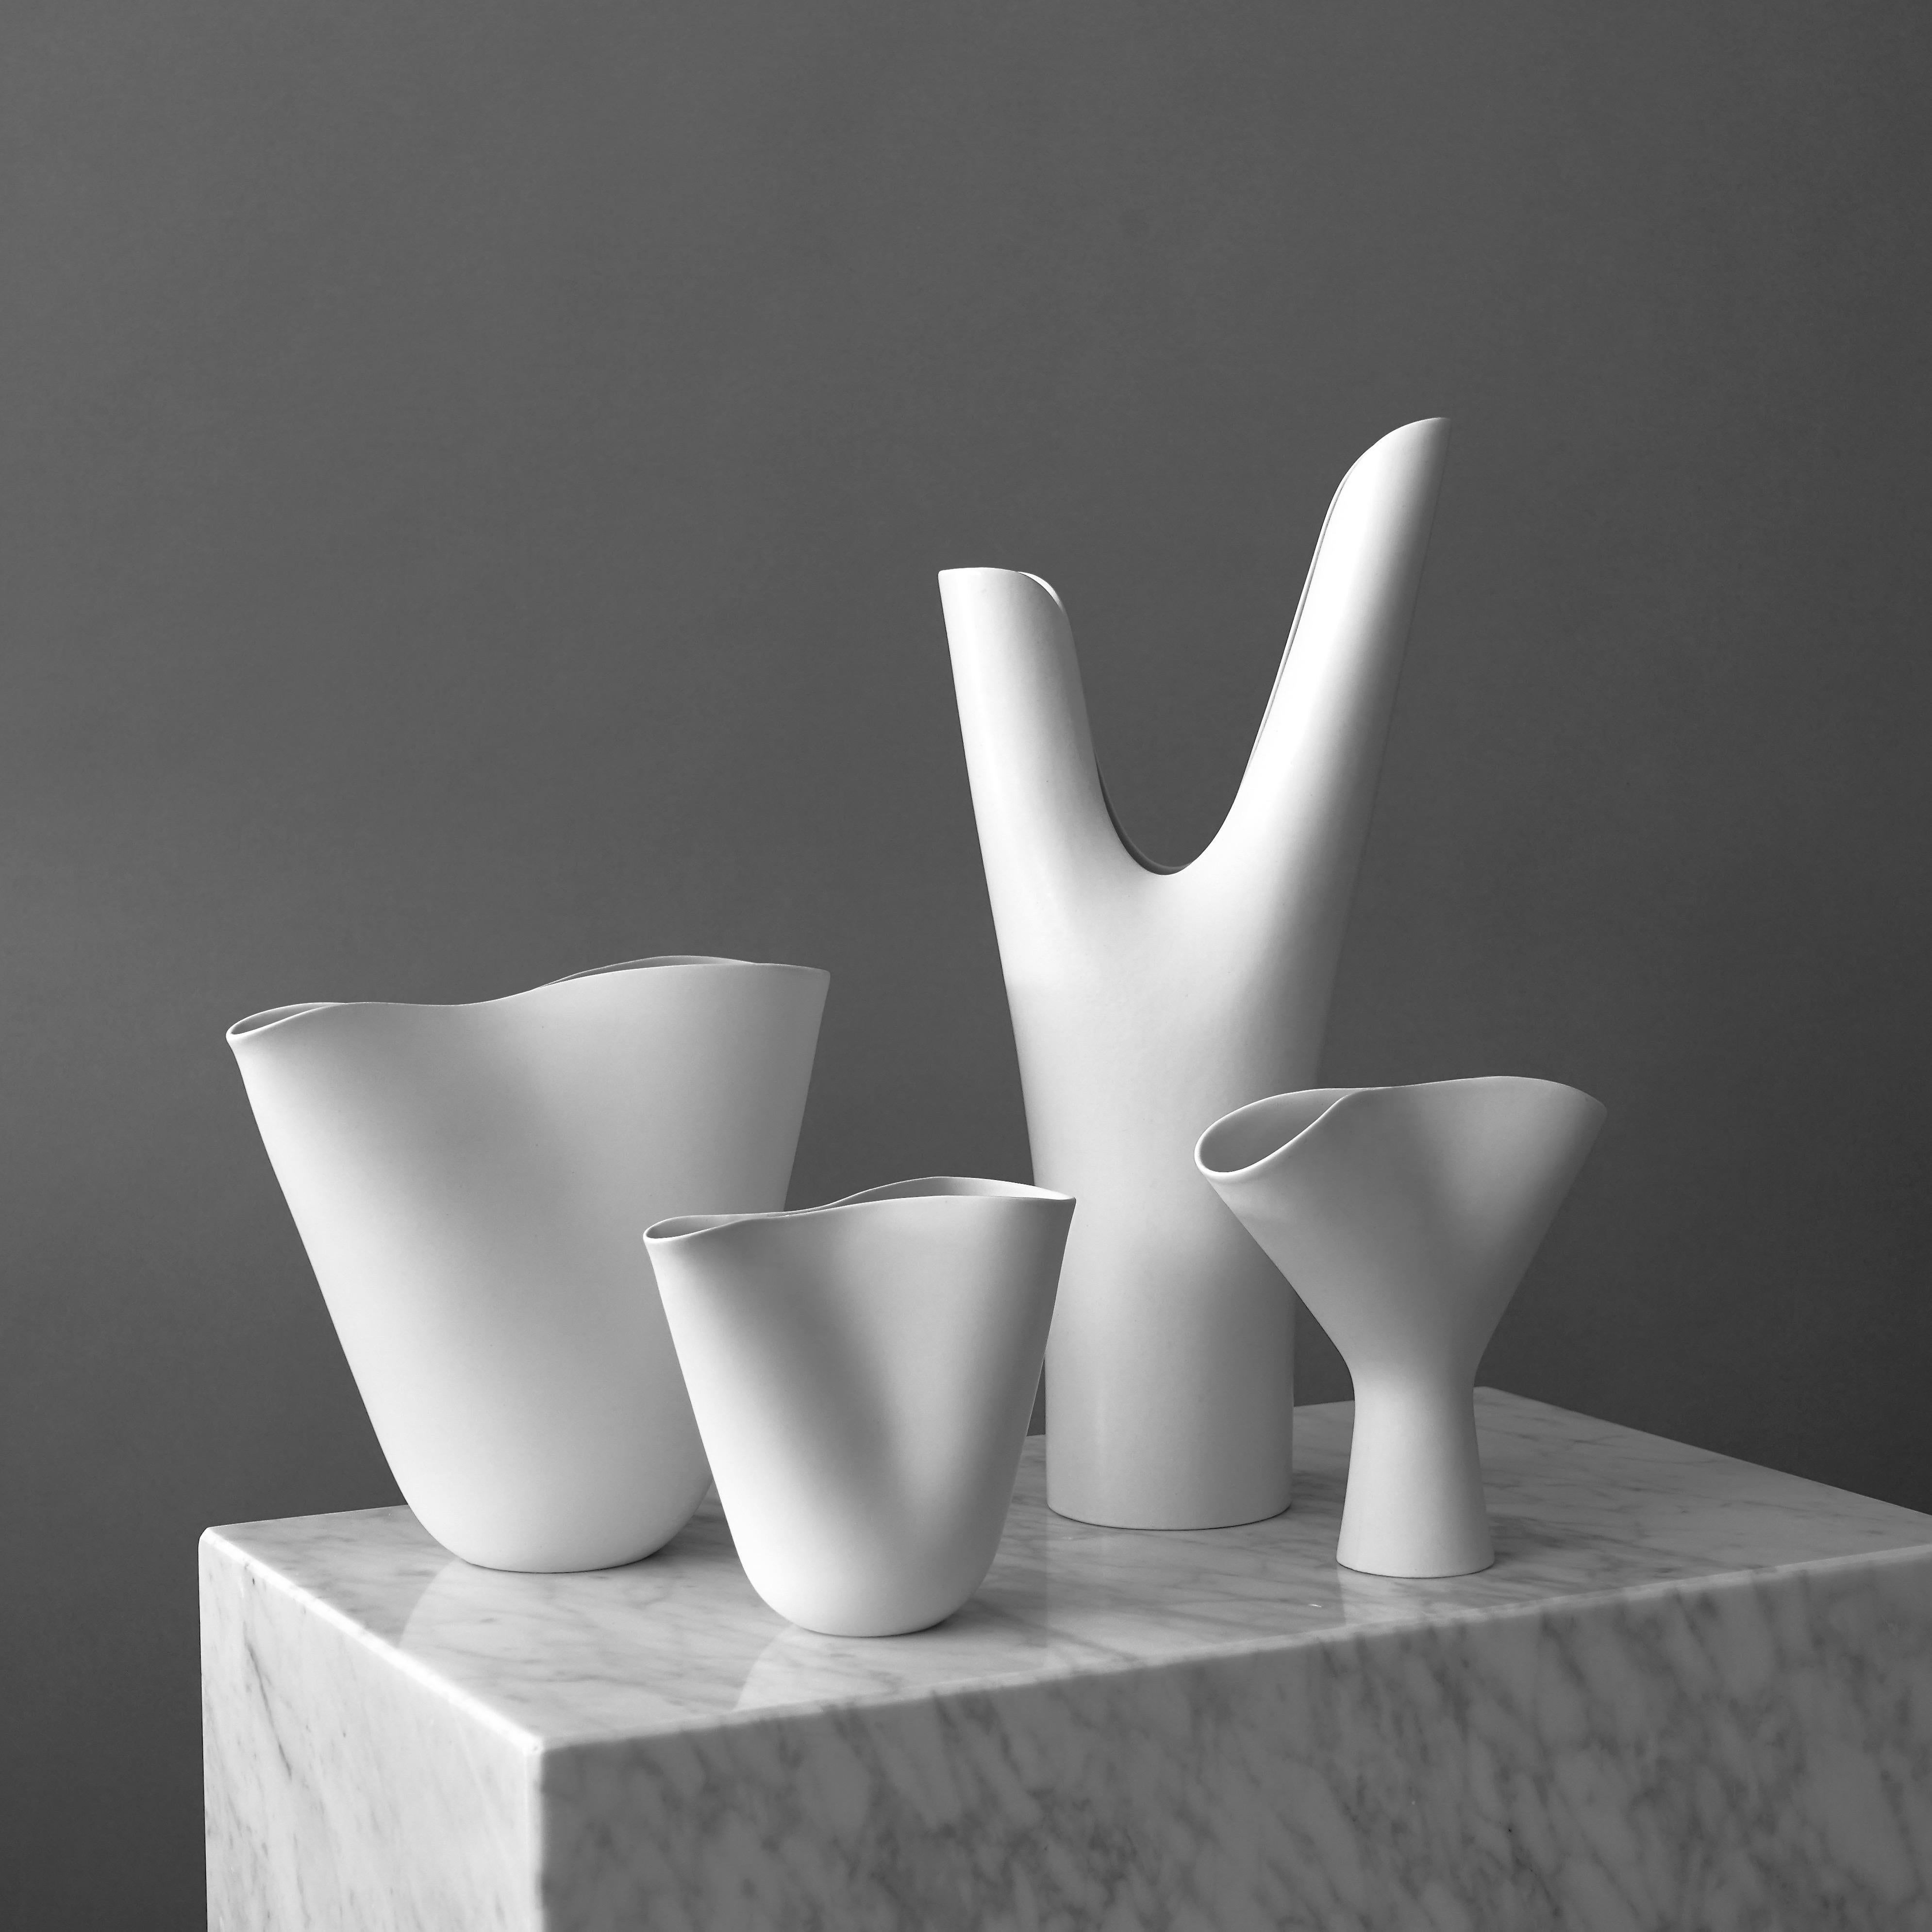 Un ensemble de 4 magnifiques vases 'Veckla'.
Fabriqué par Stig Lindberg dans le Studio Gustavsberg, Suède, années 1950.

Excellent état.
Impression de la main du studio de Gustavsberg.
Le plus grand vase mesure 36 cm de haut.

Les vases 